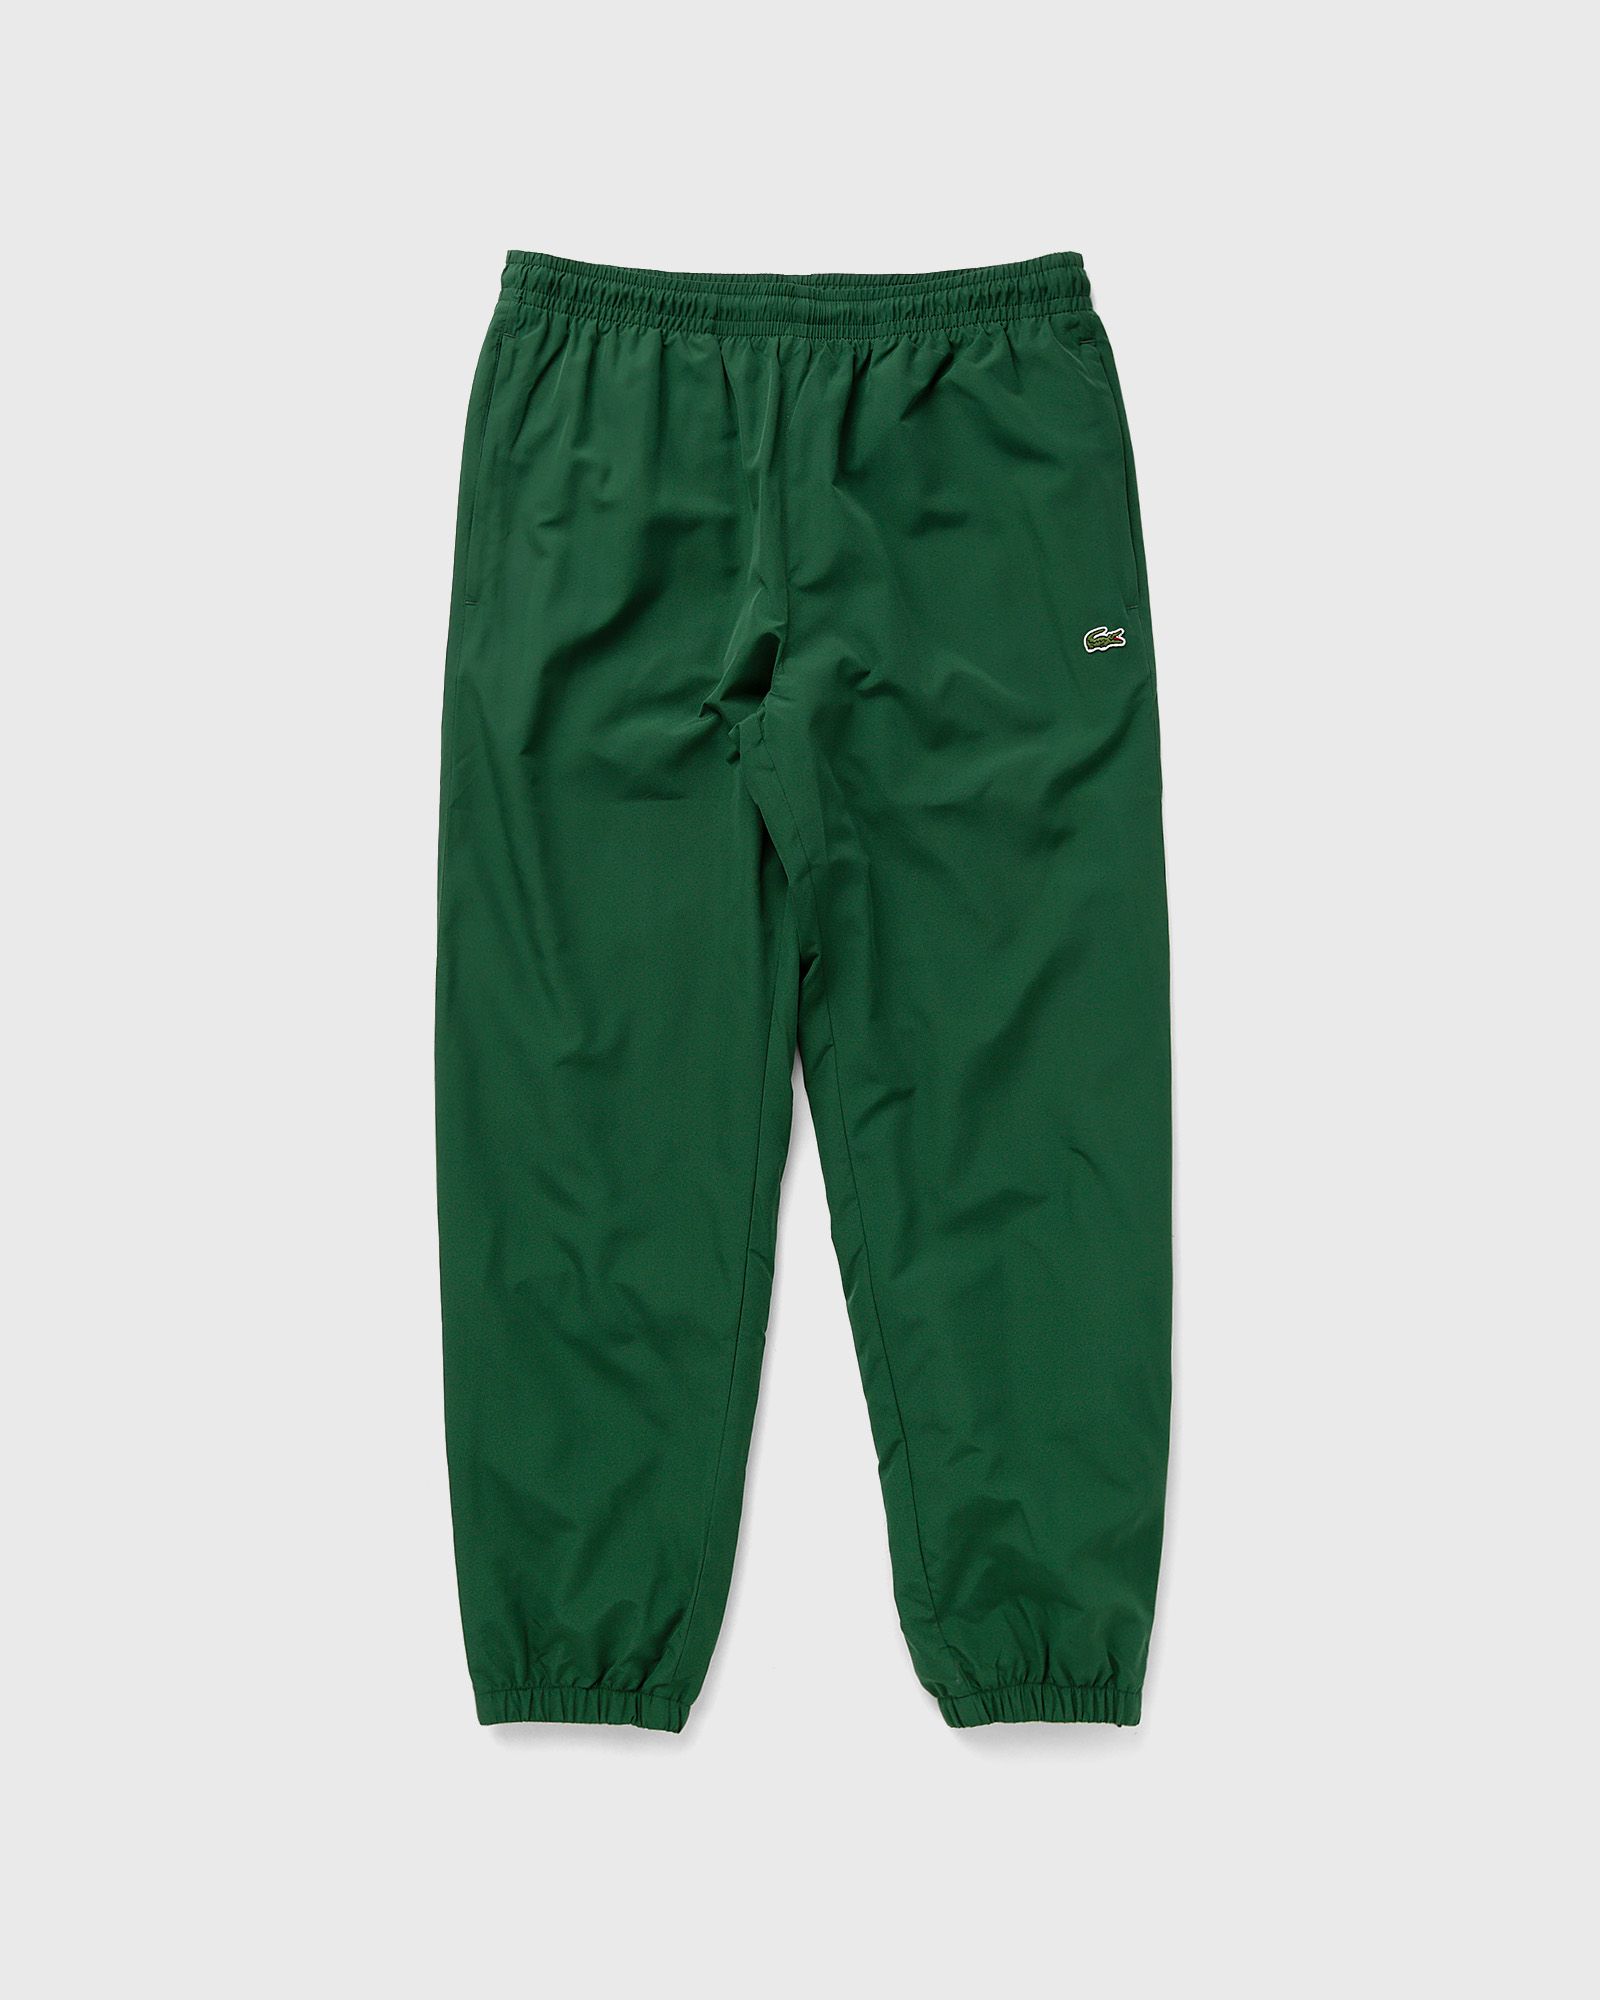 Lacoste - trainingshose men track pants green in größe:xxl